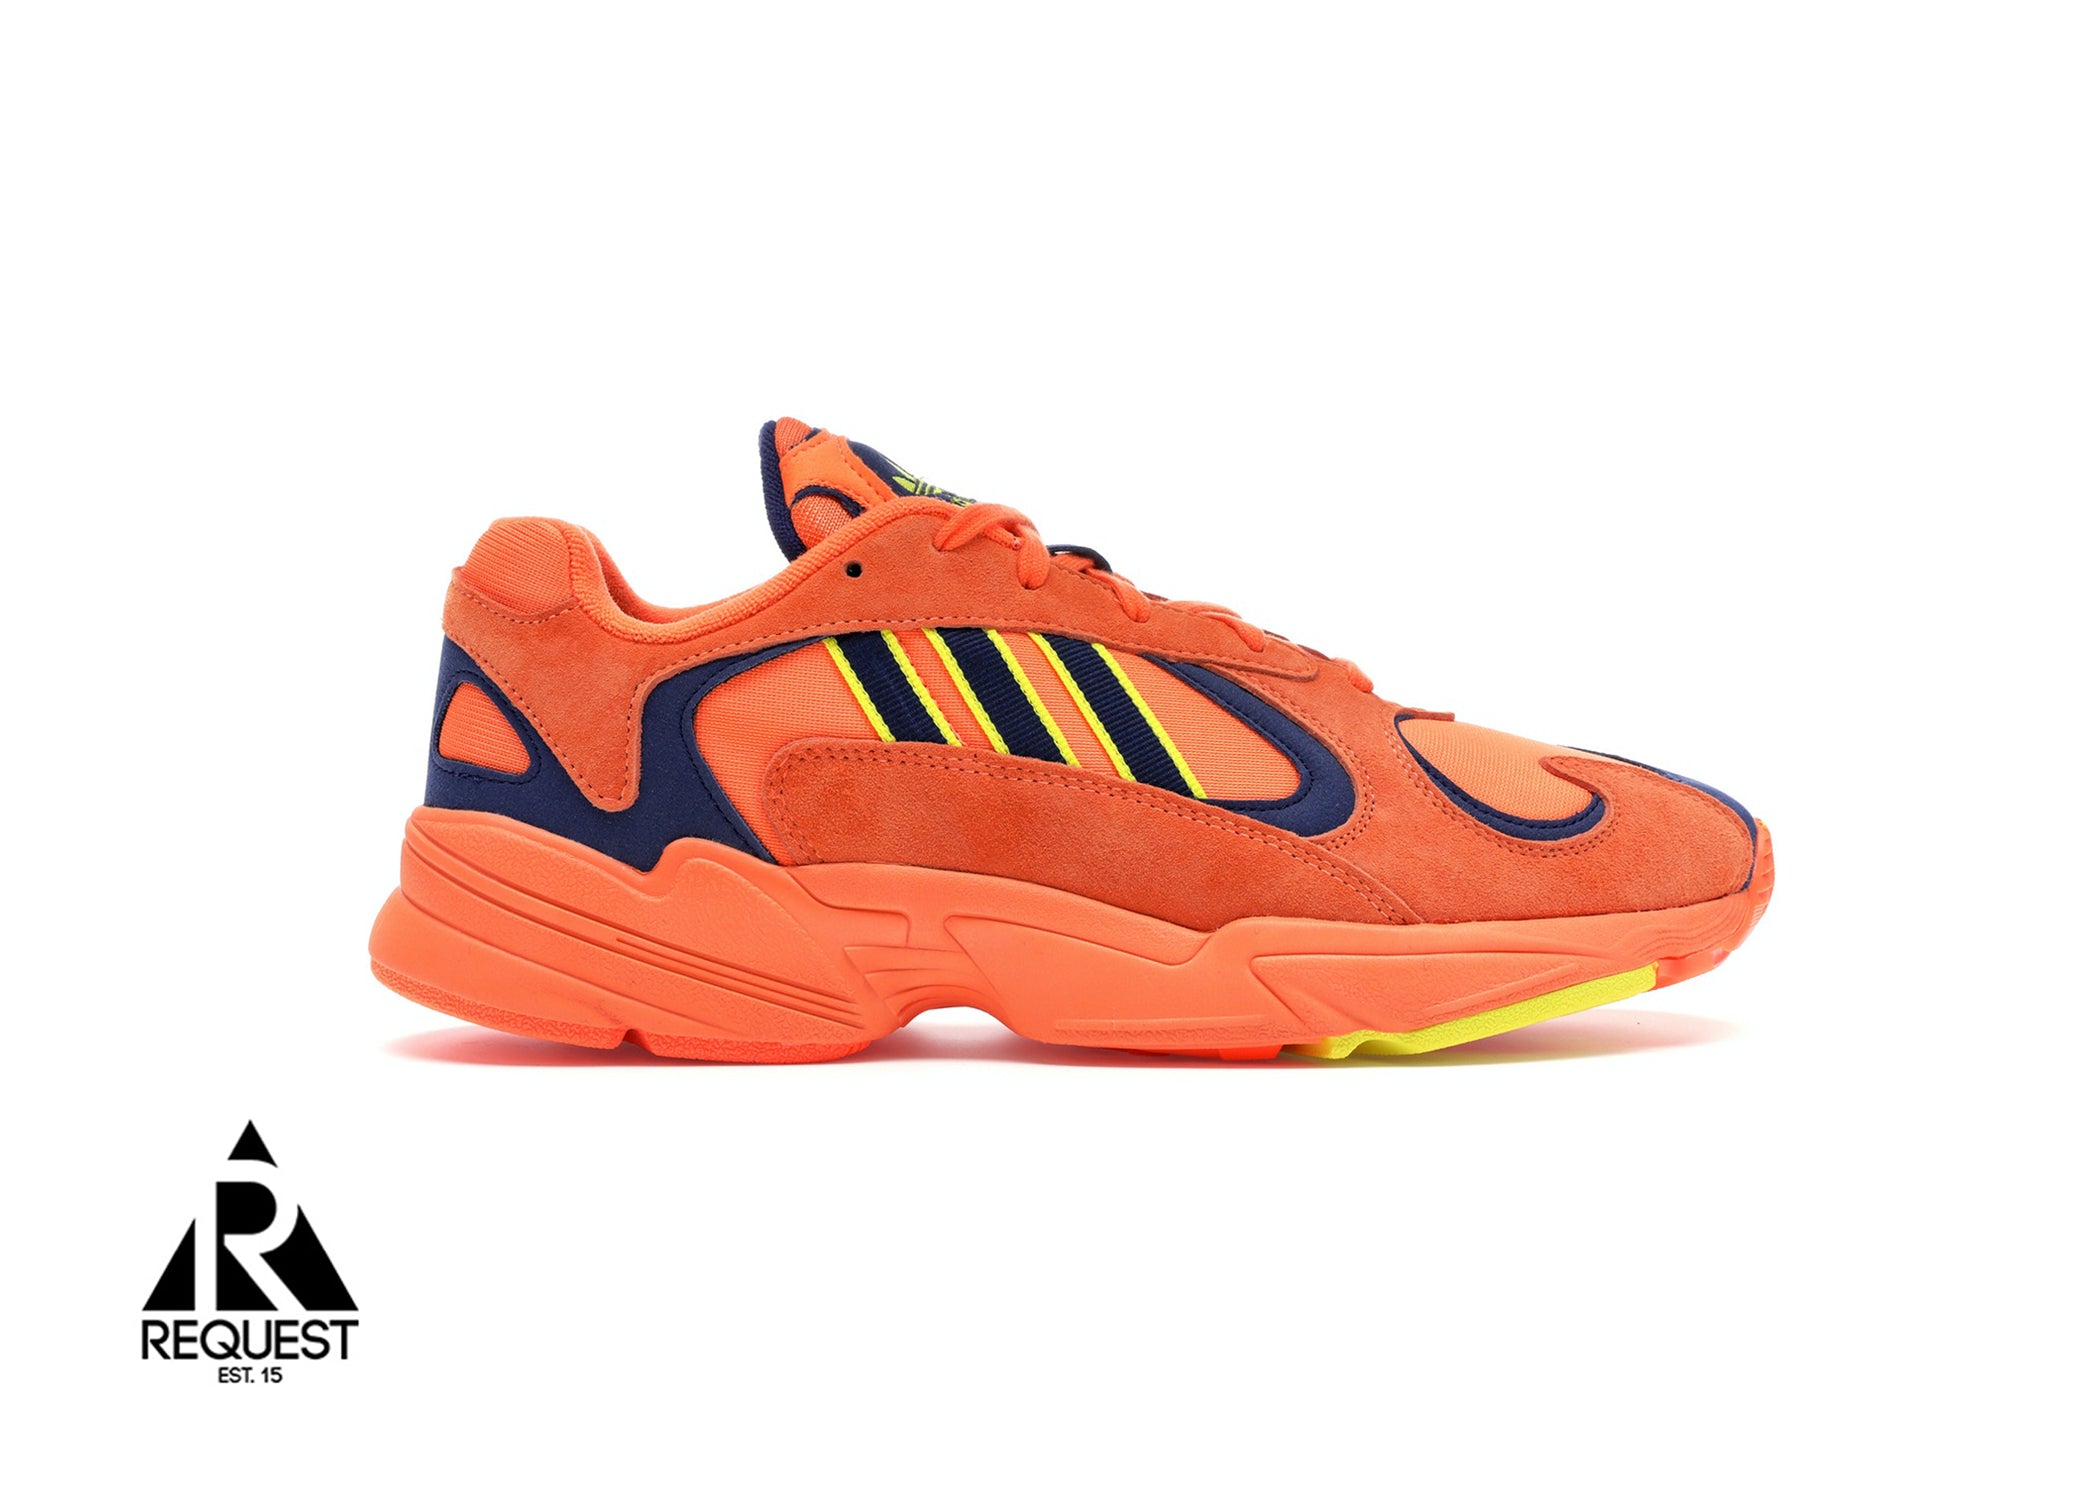 Adidas Yung 1 “Orange”